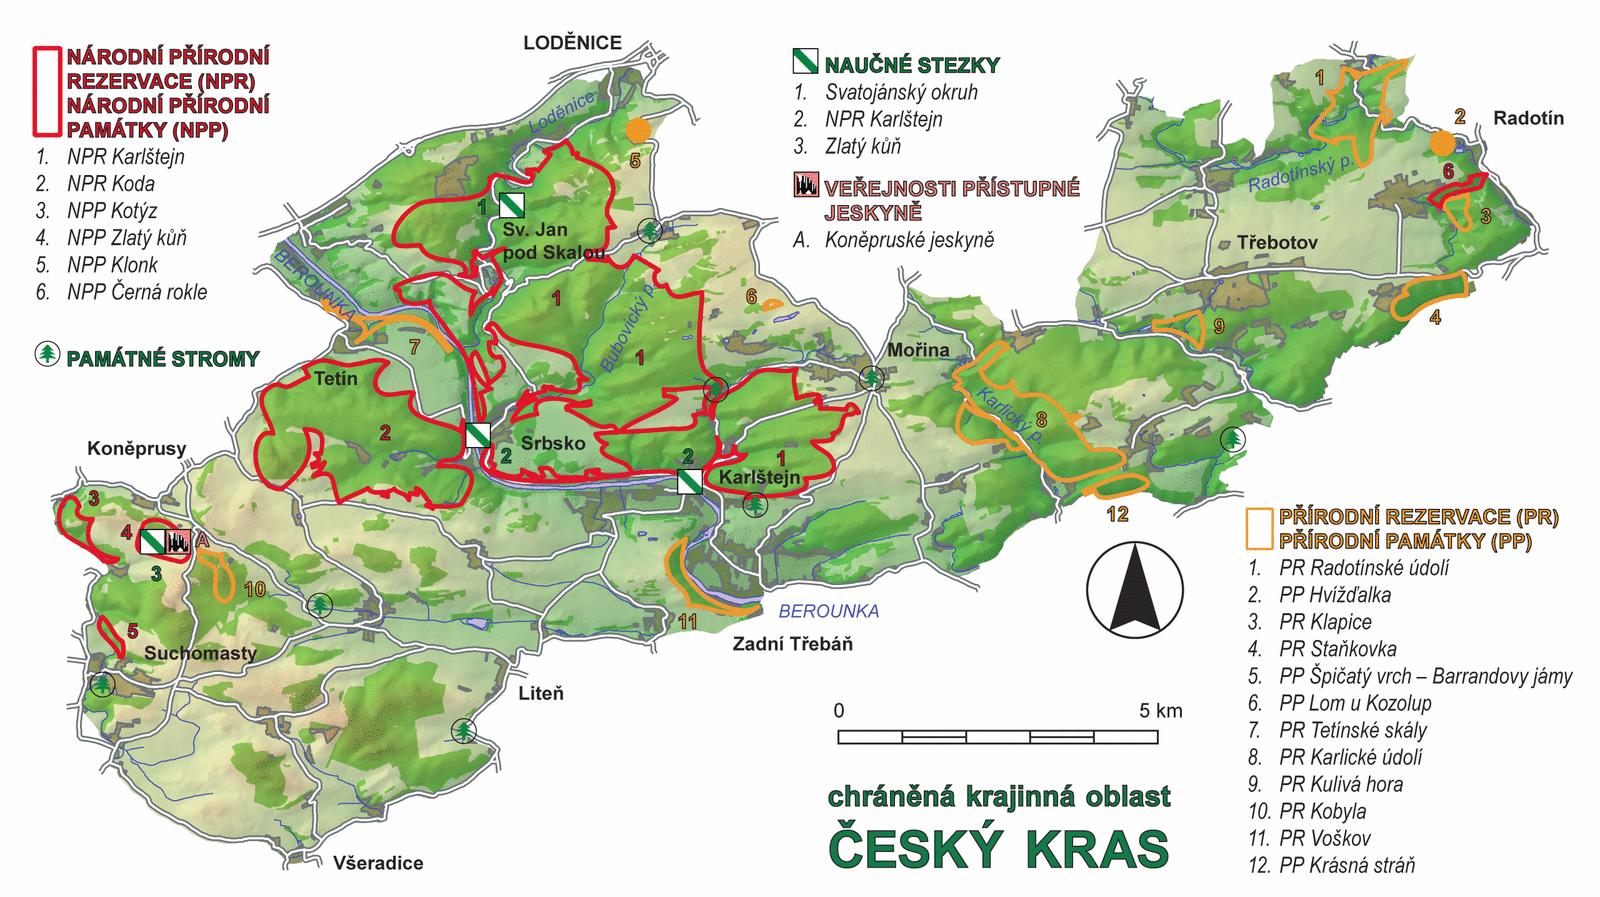 Chráněná krajinná oblast Český kras Rozloha: 132 km 2 Posláním chráněné krajinné oblasti je ochrana všech hodnot její krajiny, jejího vzhledu a jejích typických znaků i přírodních fenoménů a